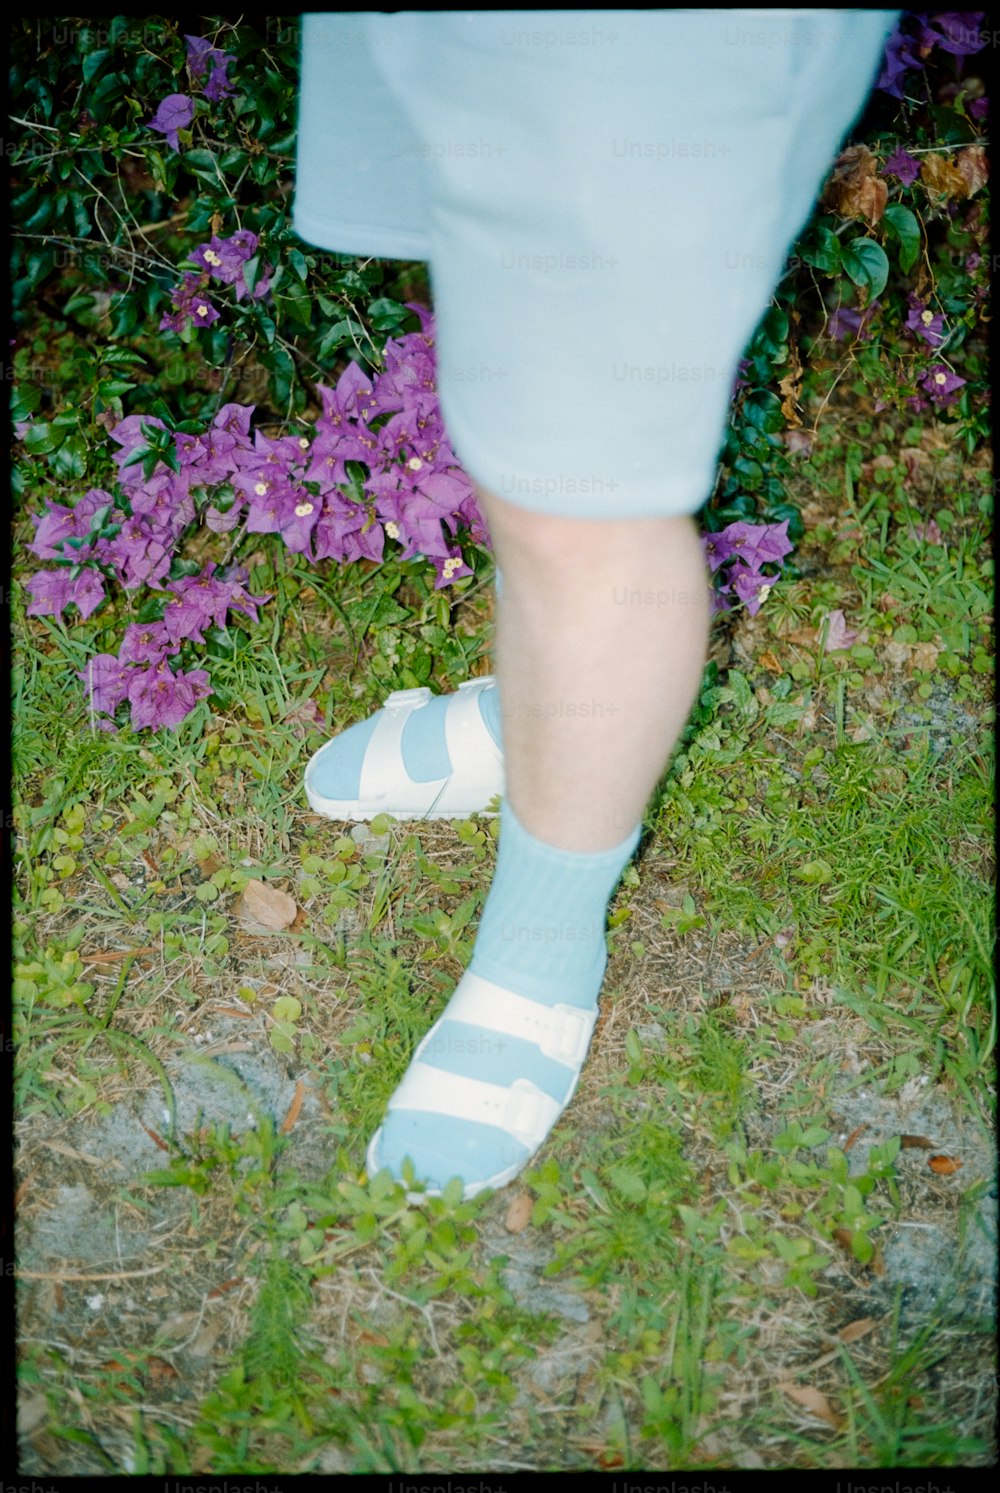 una persona che indossa calzini blu e bianchi in piedi nell'erba